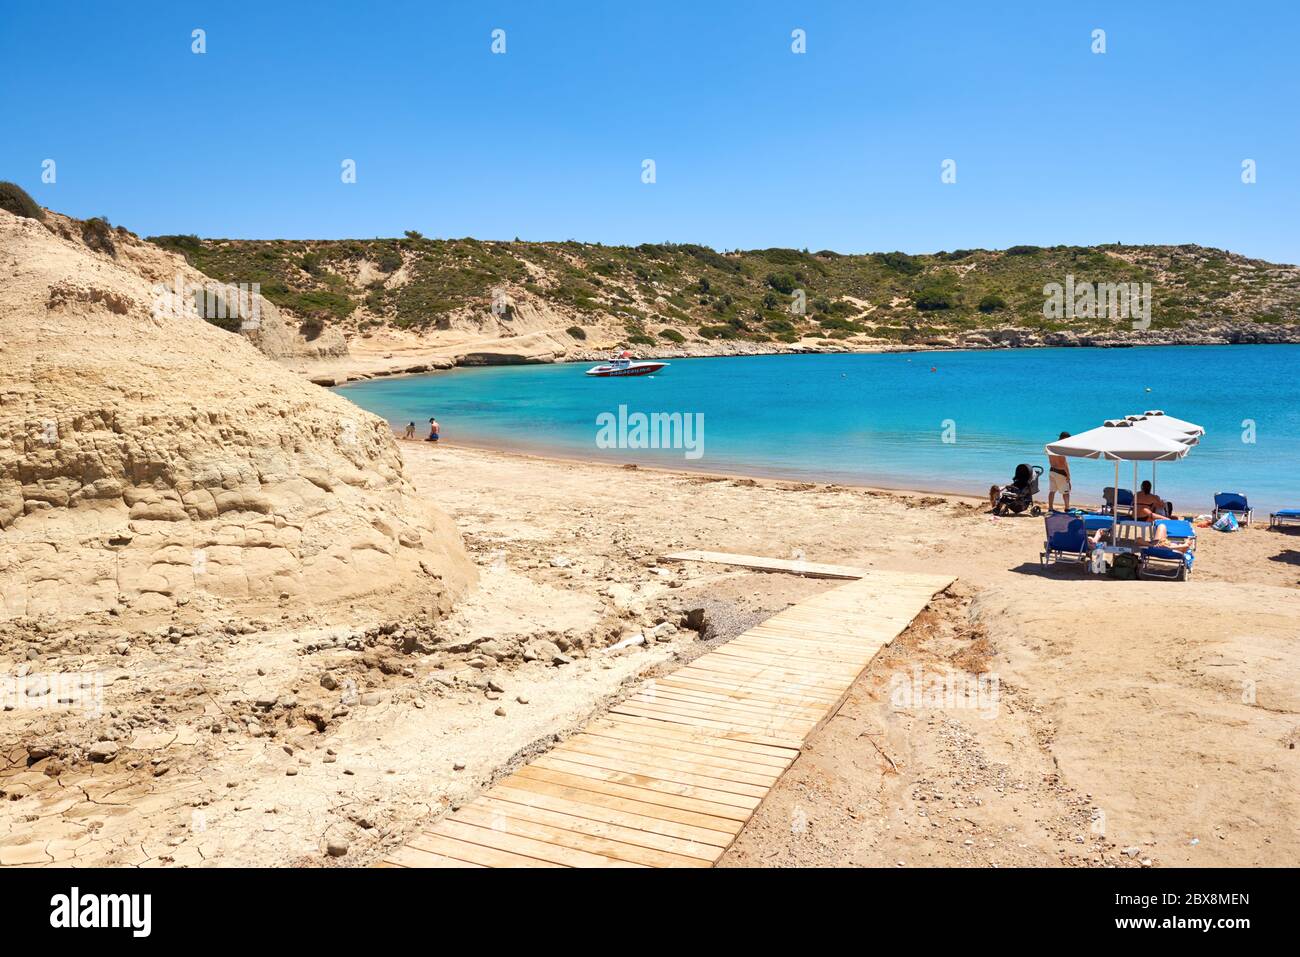 RODI, GRECIA - 12 maggio 2018: Spiaggia sabbiosa e tranquilla nel villaggio di Kolymbia. Isola di Rodi. Grecia Foto Stock